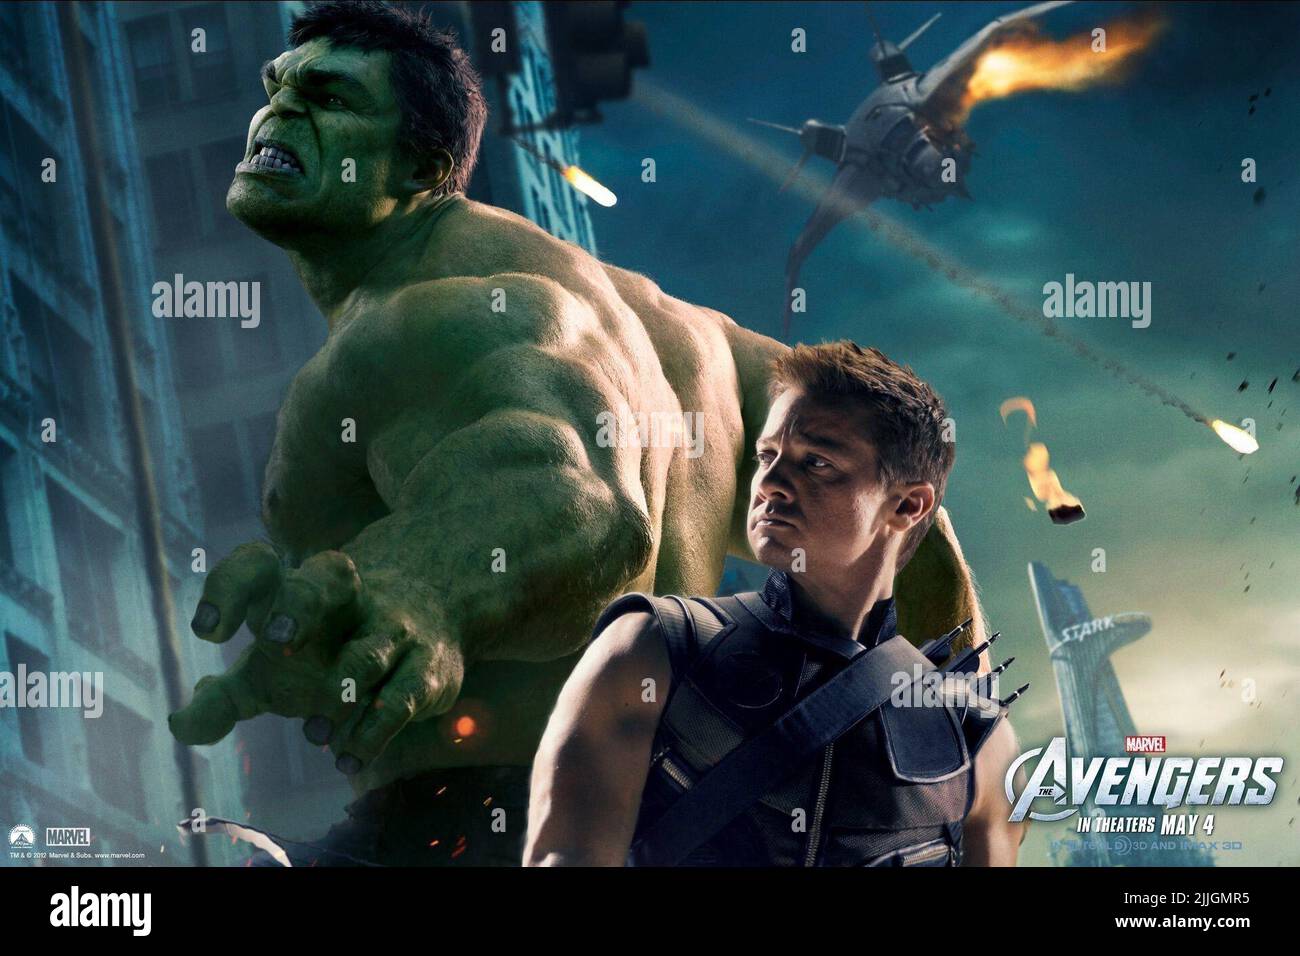 Marvel avengers poster hi